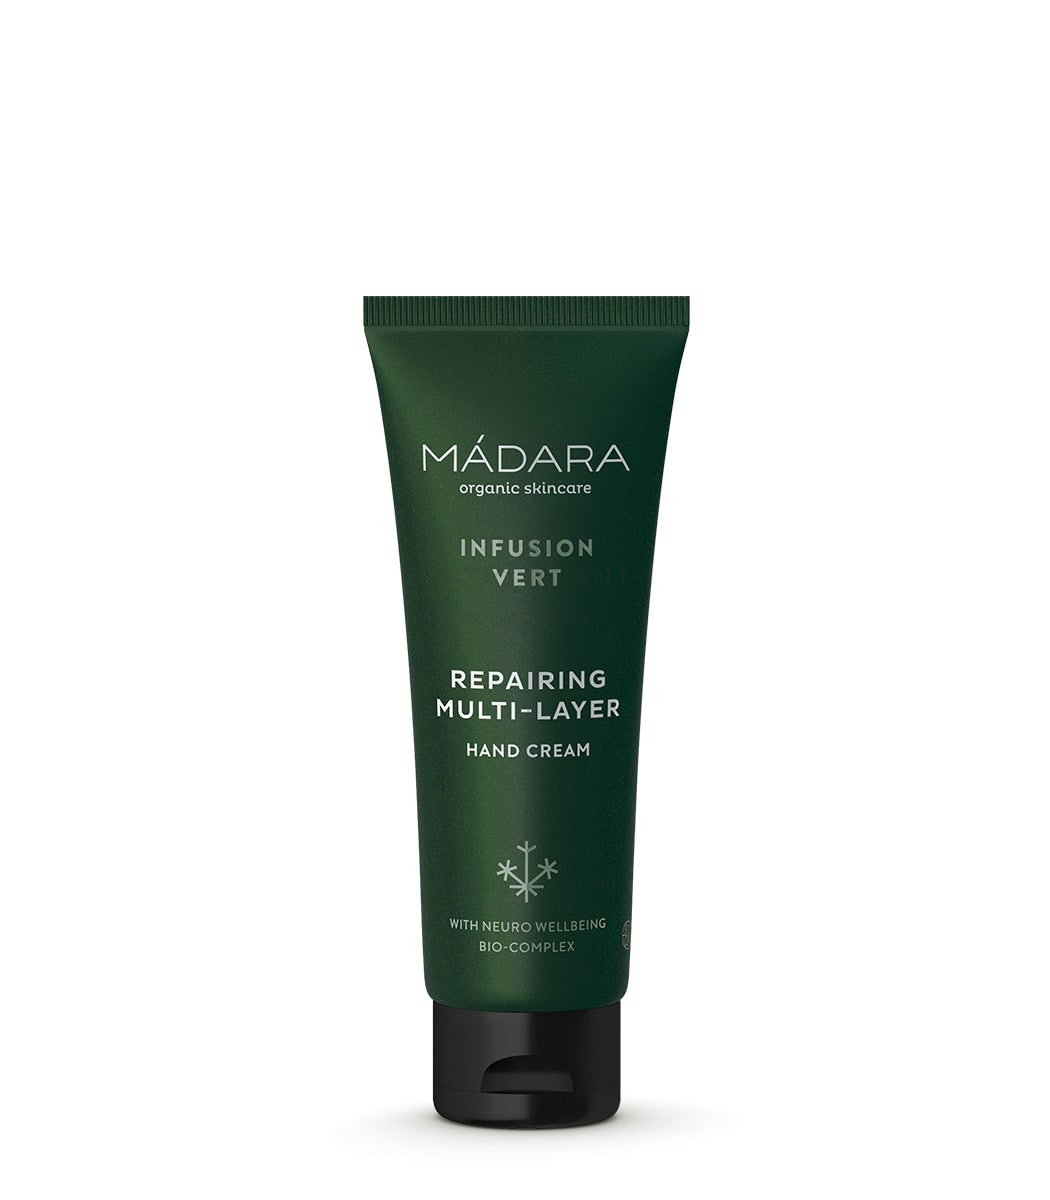 Madara Organic Skincare Infusion Vert Repairing Multi-Layer Hand Cream 75ml